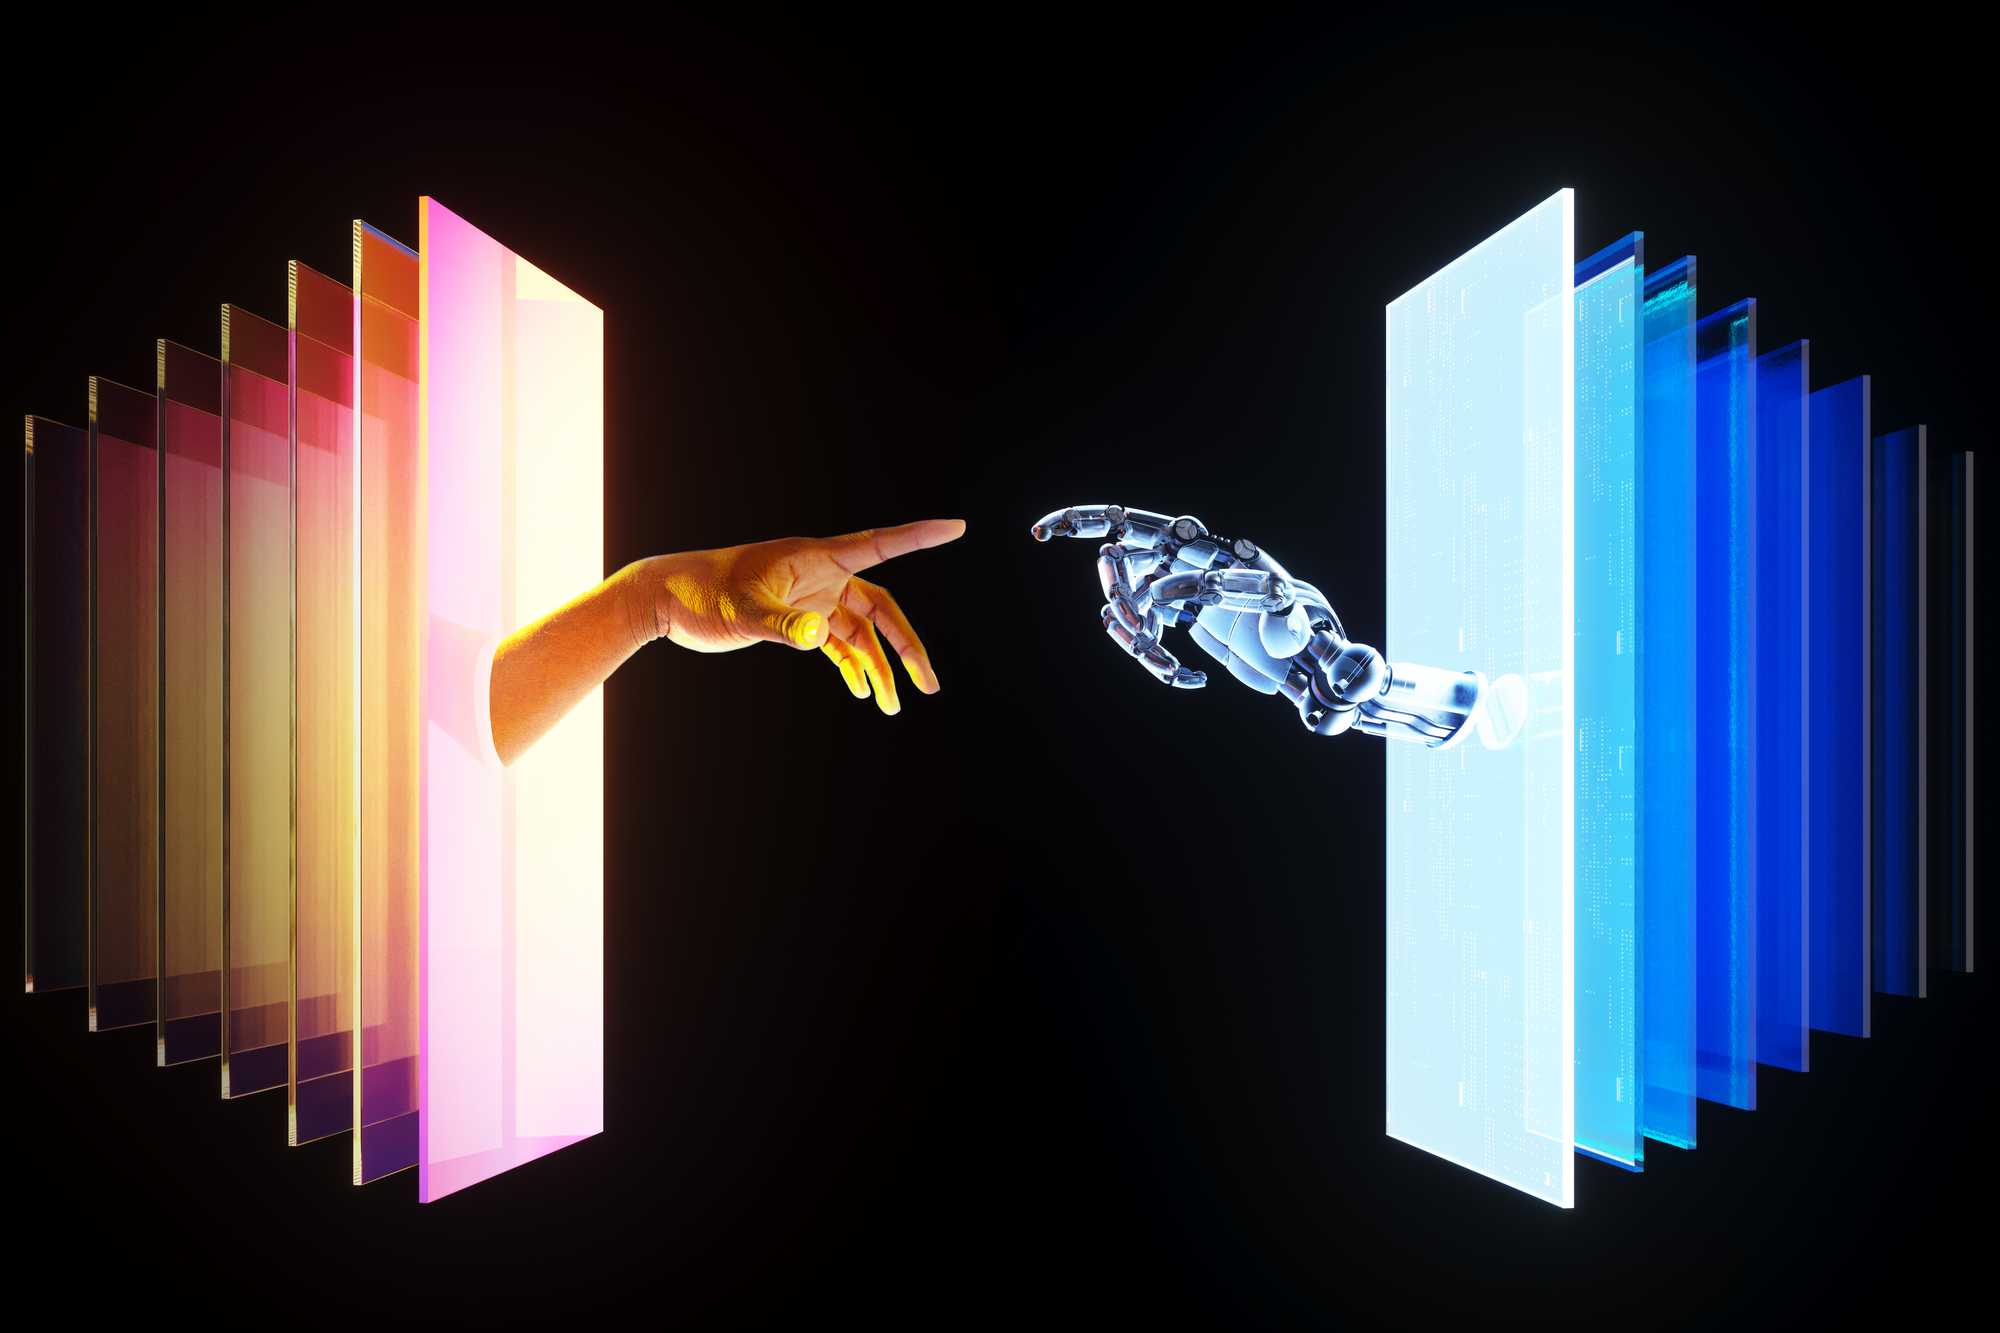 Human and robot hands meet